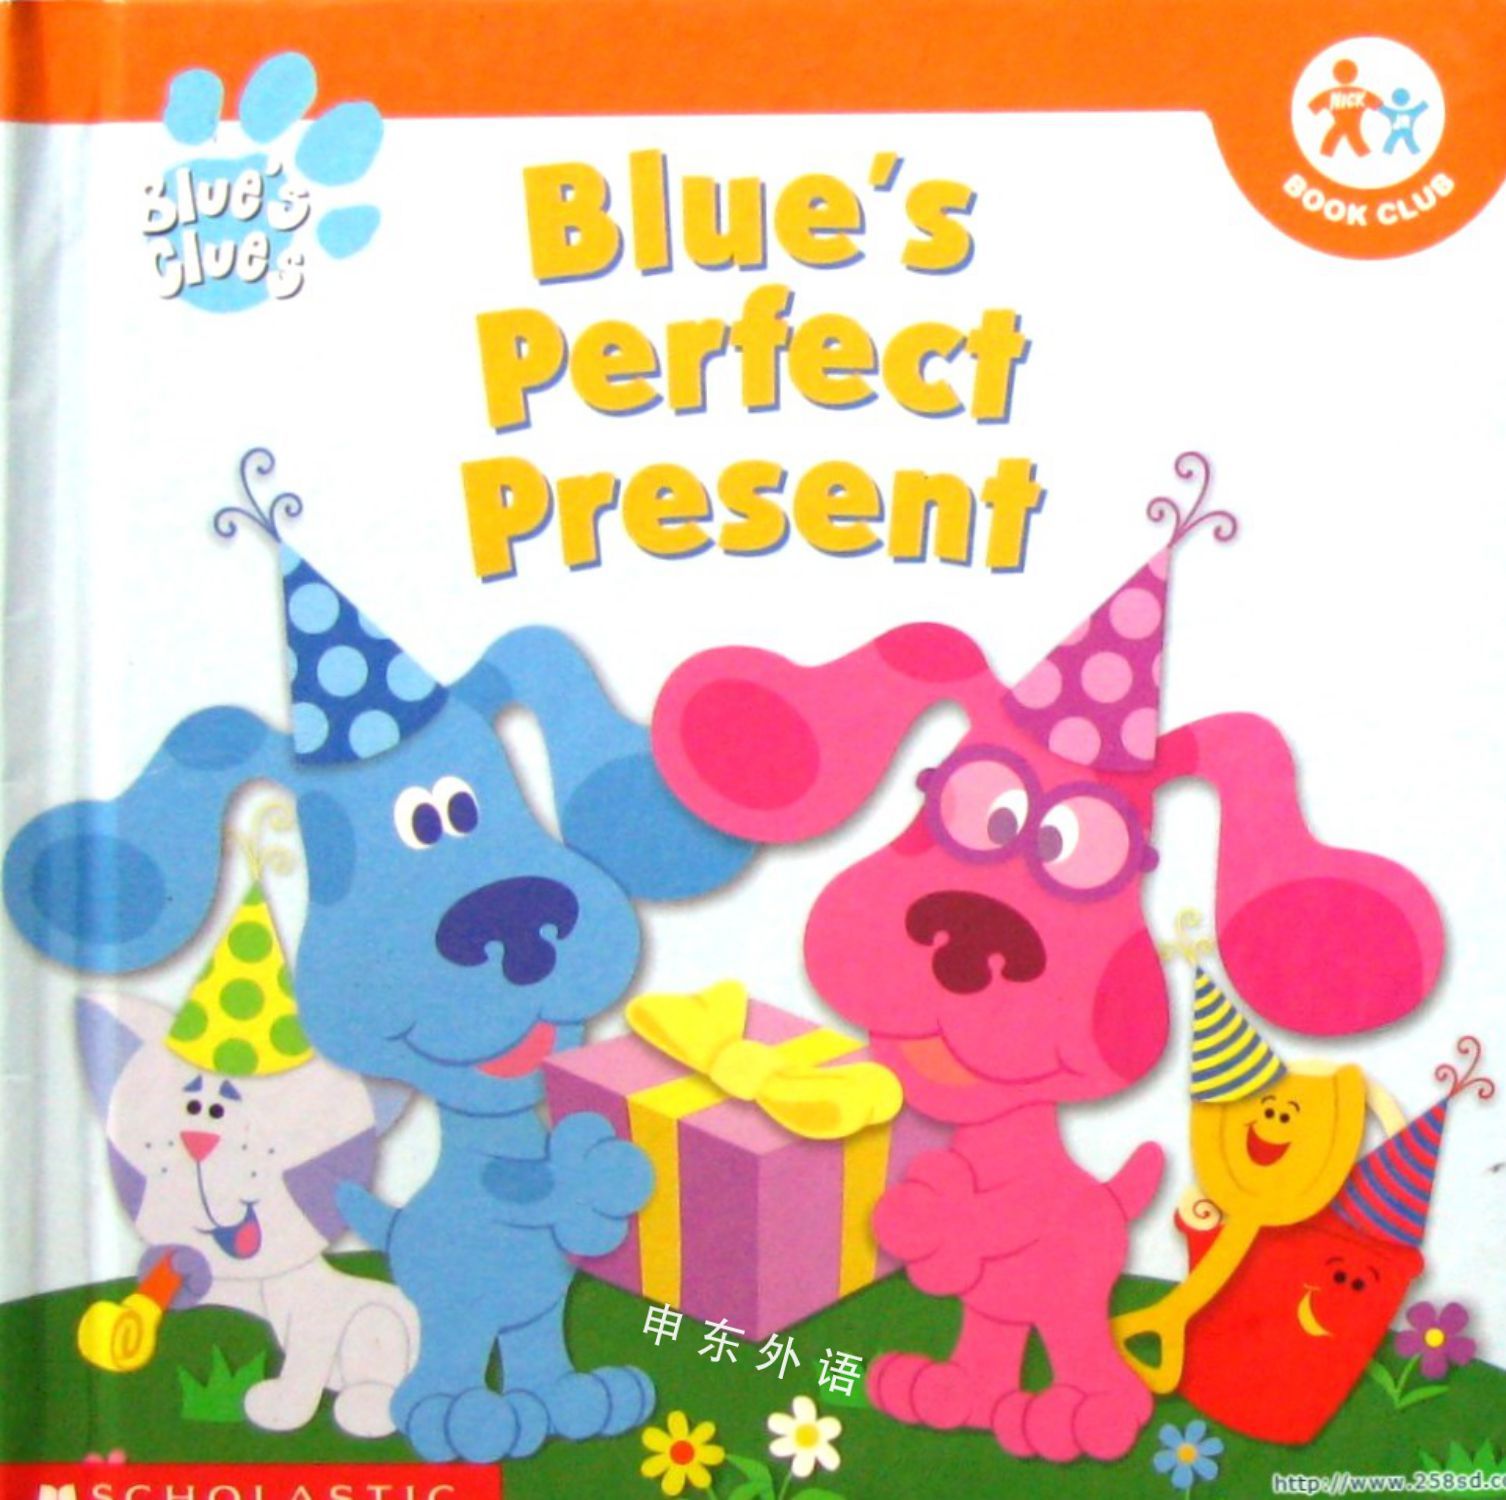 Blues Clues Blues Perfect Present 蓝色的线索 电视 热门人物 儿童图书 进口图书 进口书 原版书 绘本书 英文 原版图书 儿童纸板书 外语图书 进口儿童书 原版儿童书